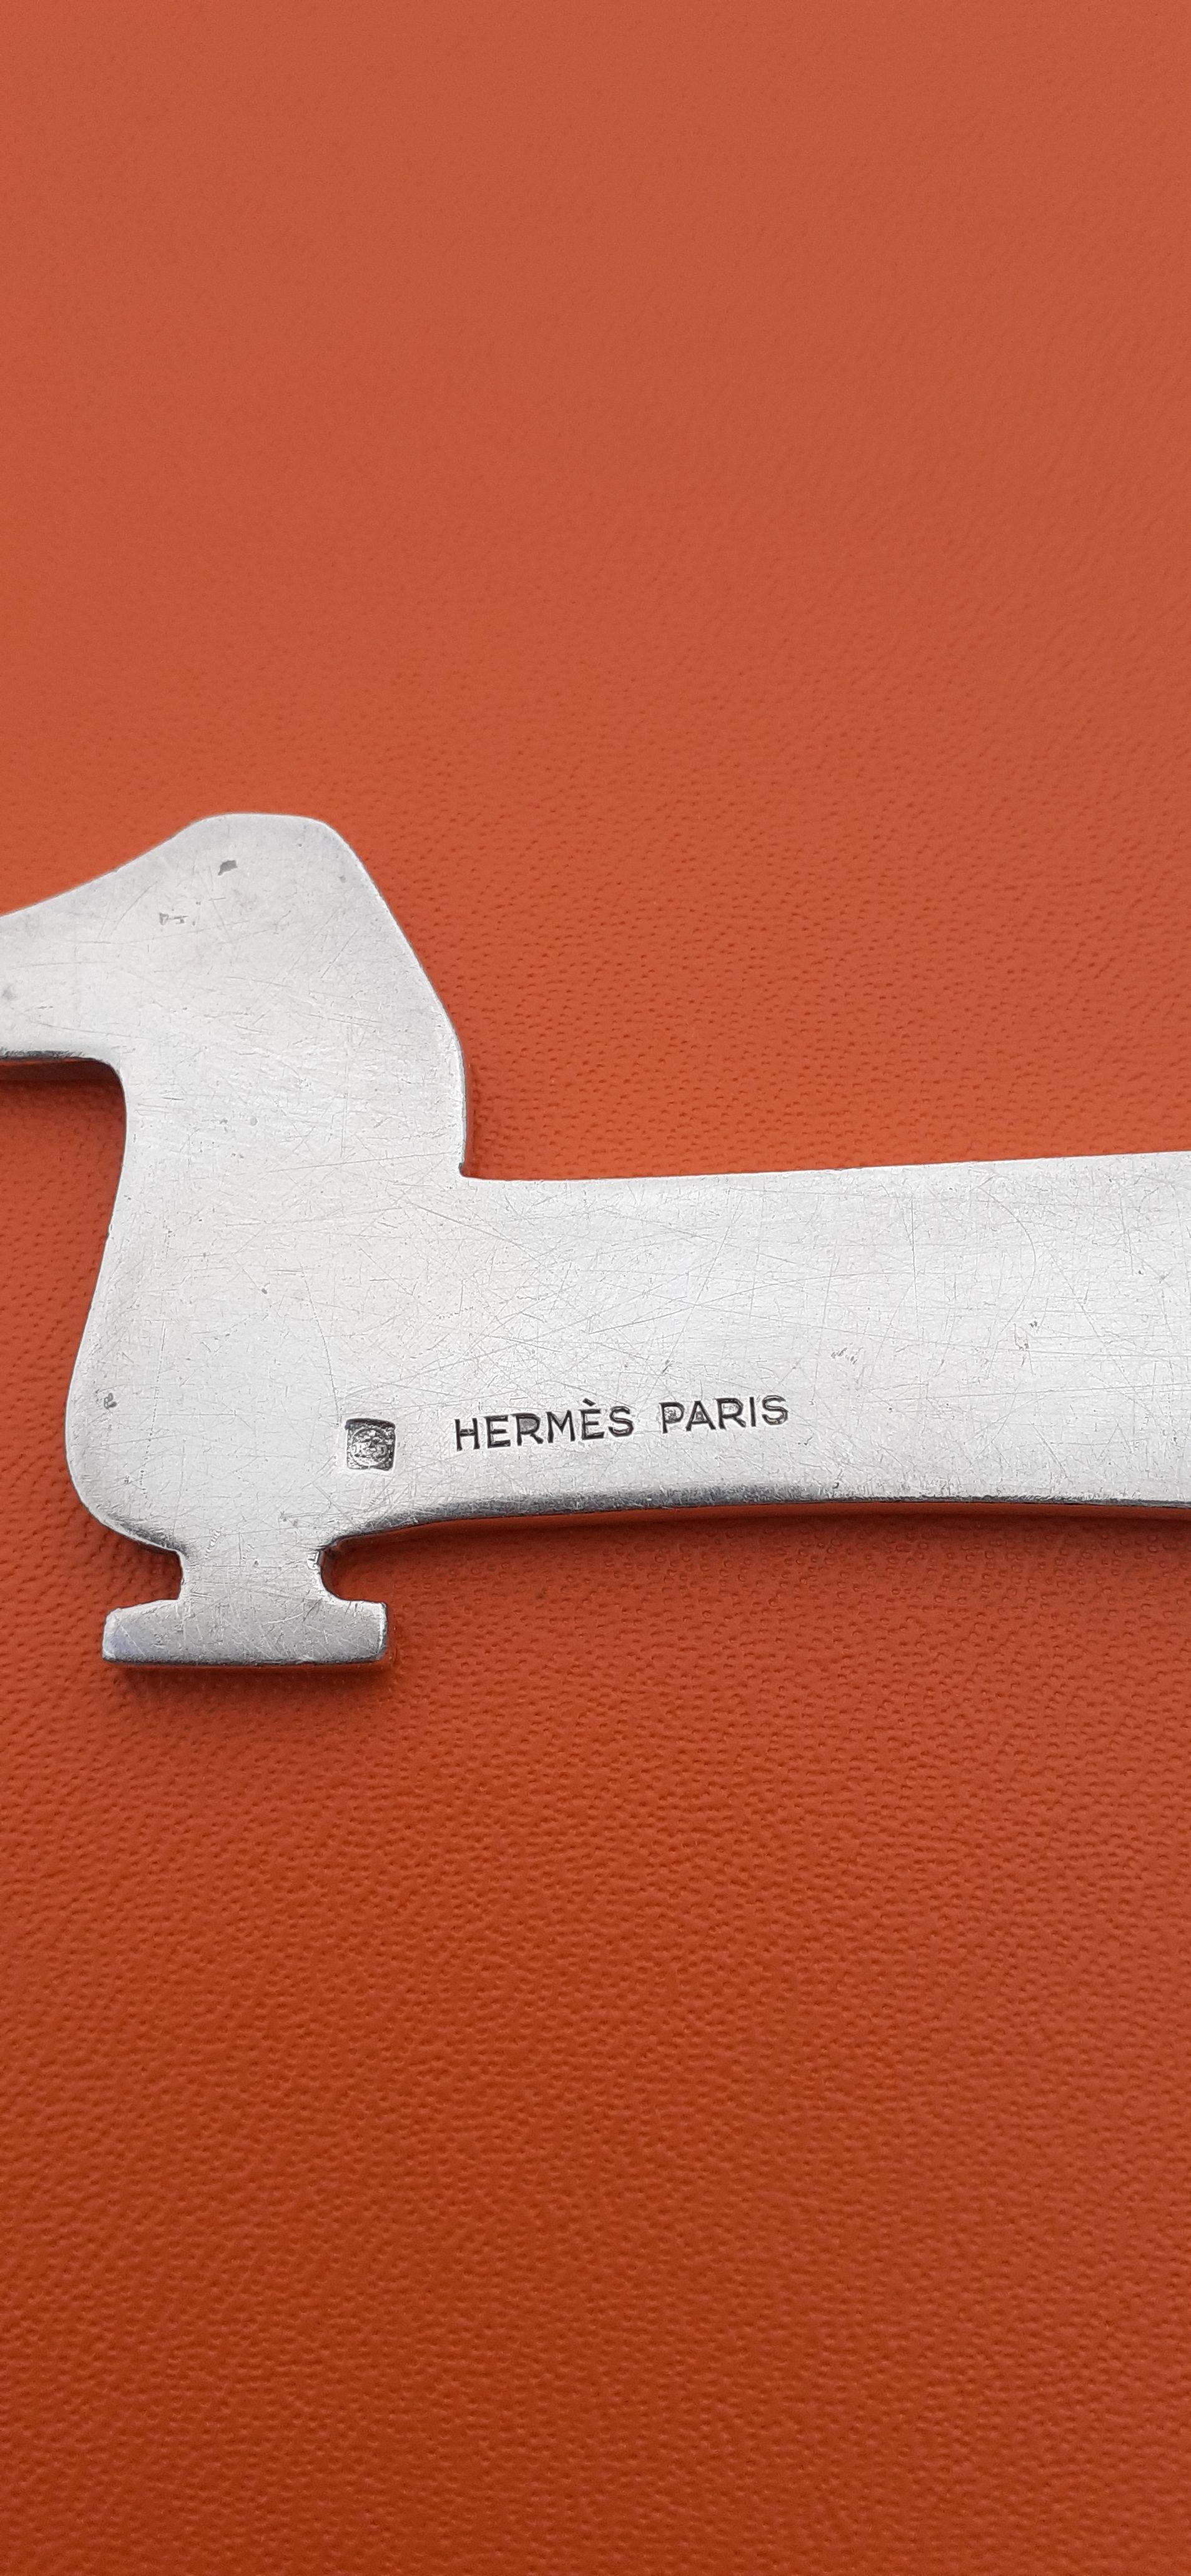 Hermès Vintage Teckel Dachshund Dog Shaped Letter Opener by Ravinet d'Enfert  For Sale 4